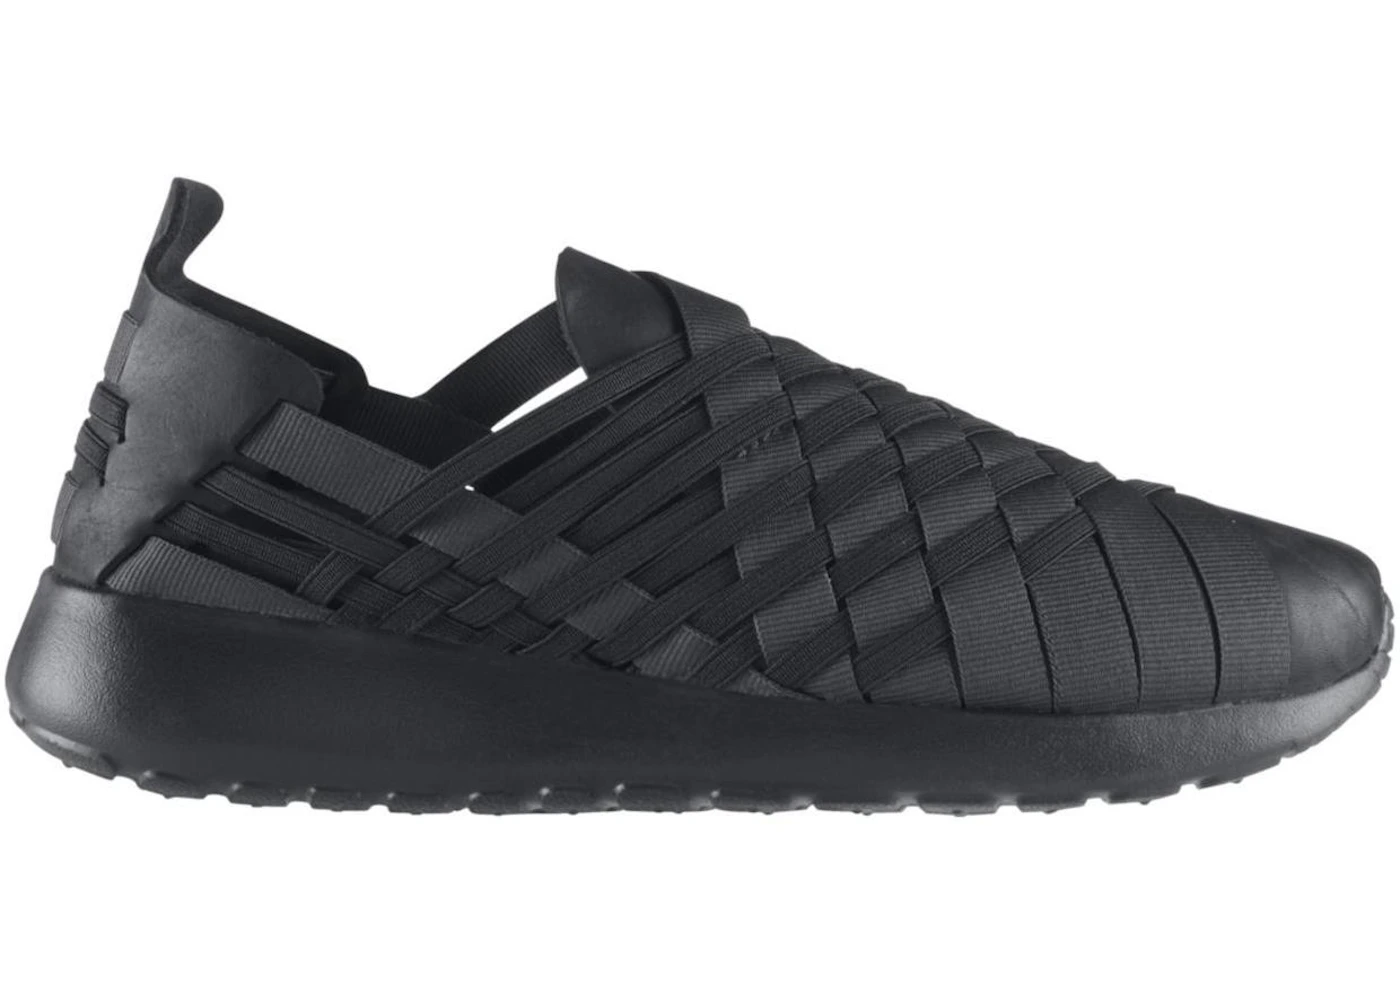 Nike Roshe Run Woven Anthracite Black (GS) Kids' - 641220-005 - US